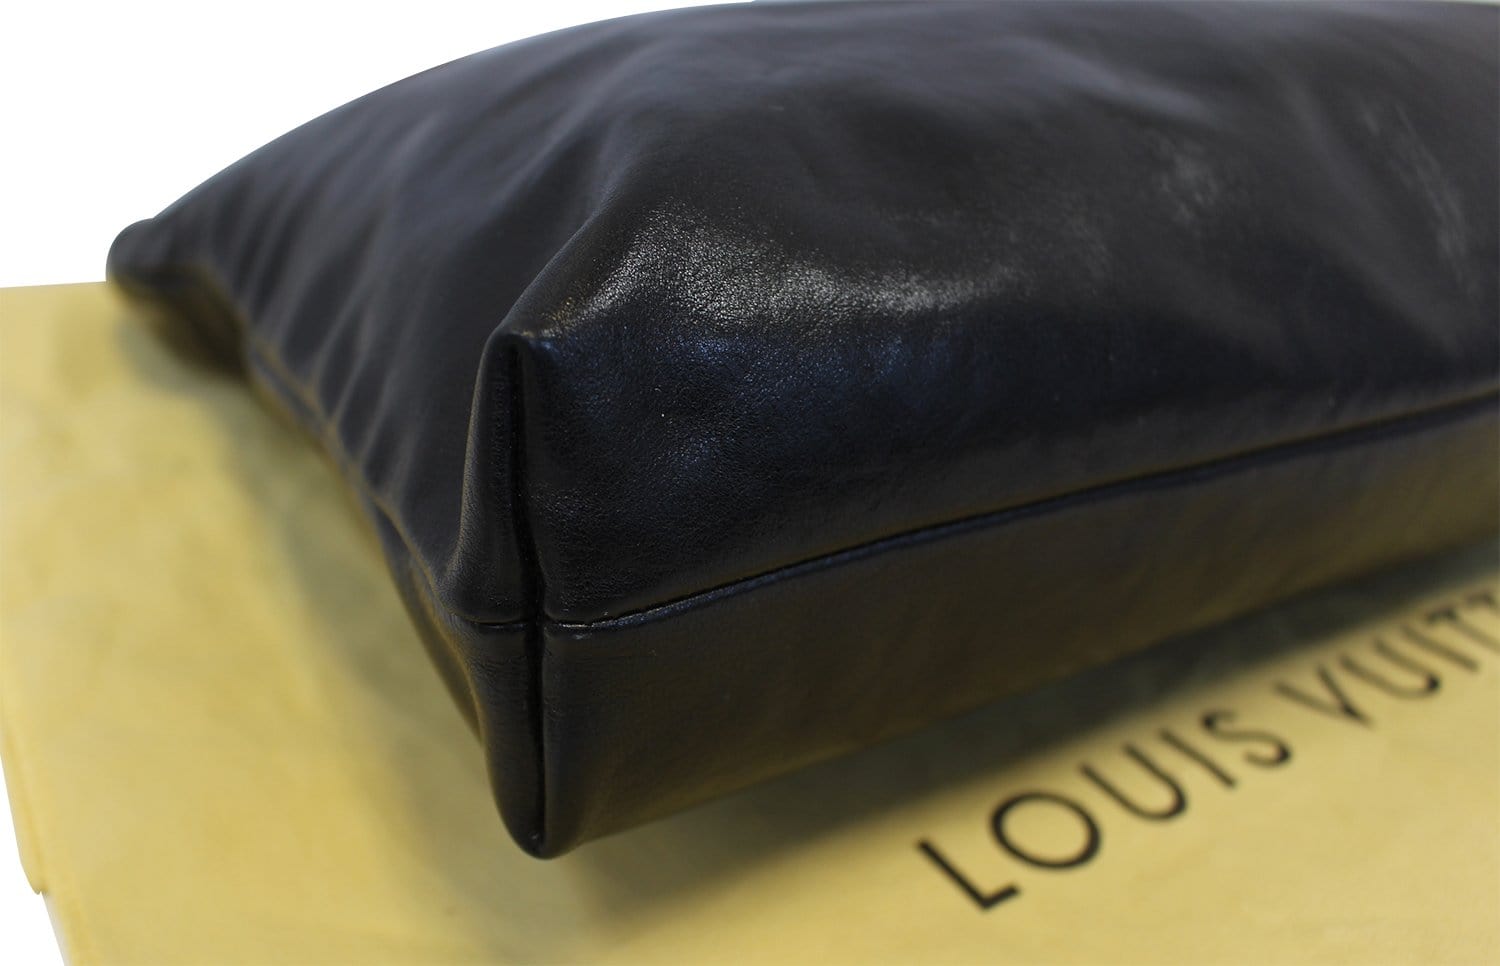 Louis Vuitton Boudoir Lockit Chain Soft Sided Tote Bag Mauve